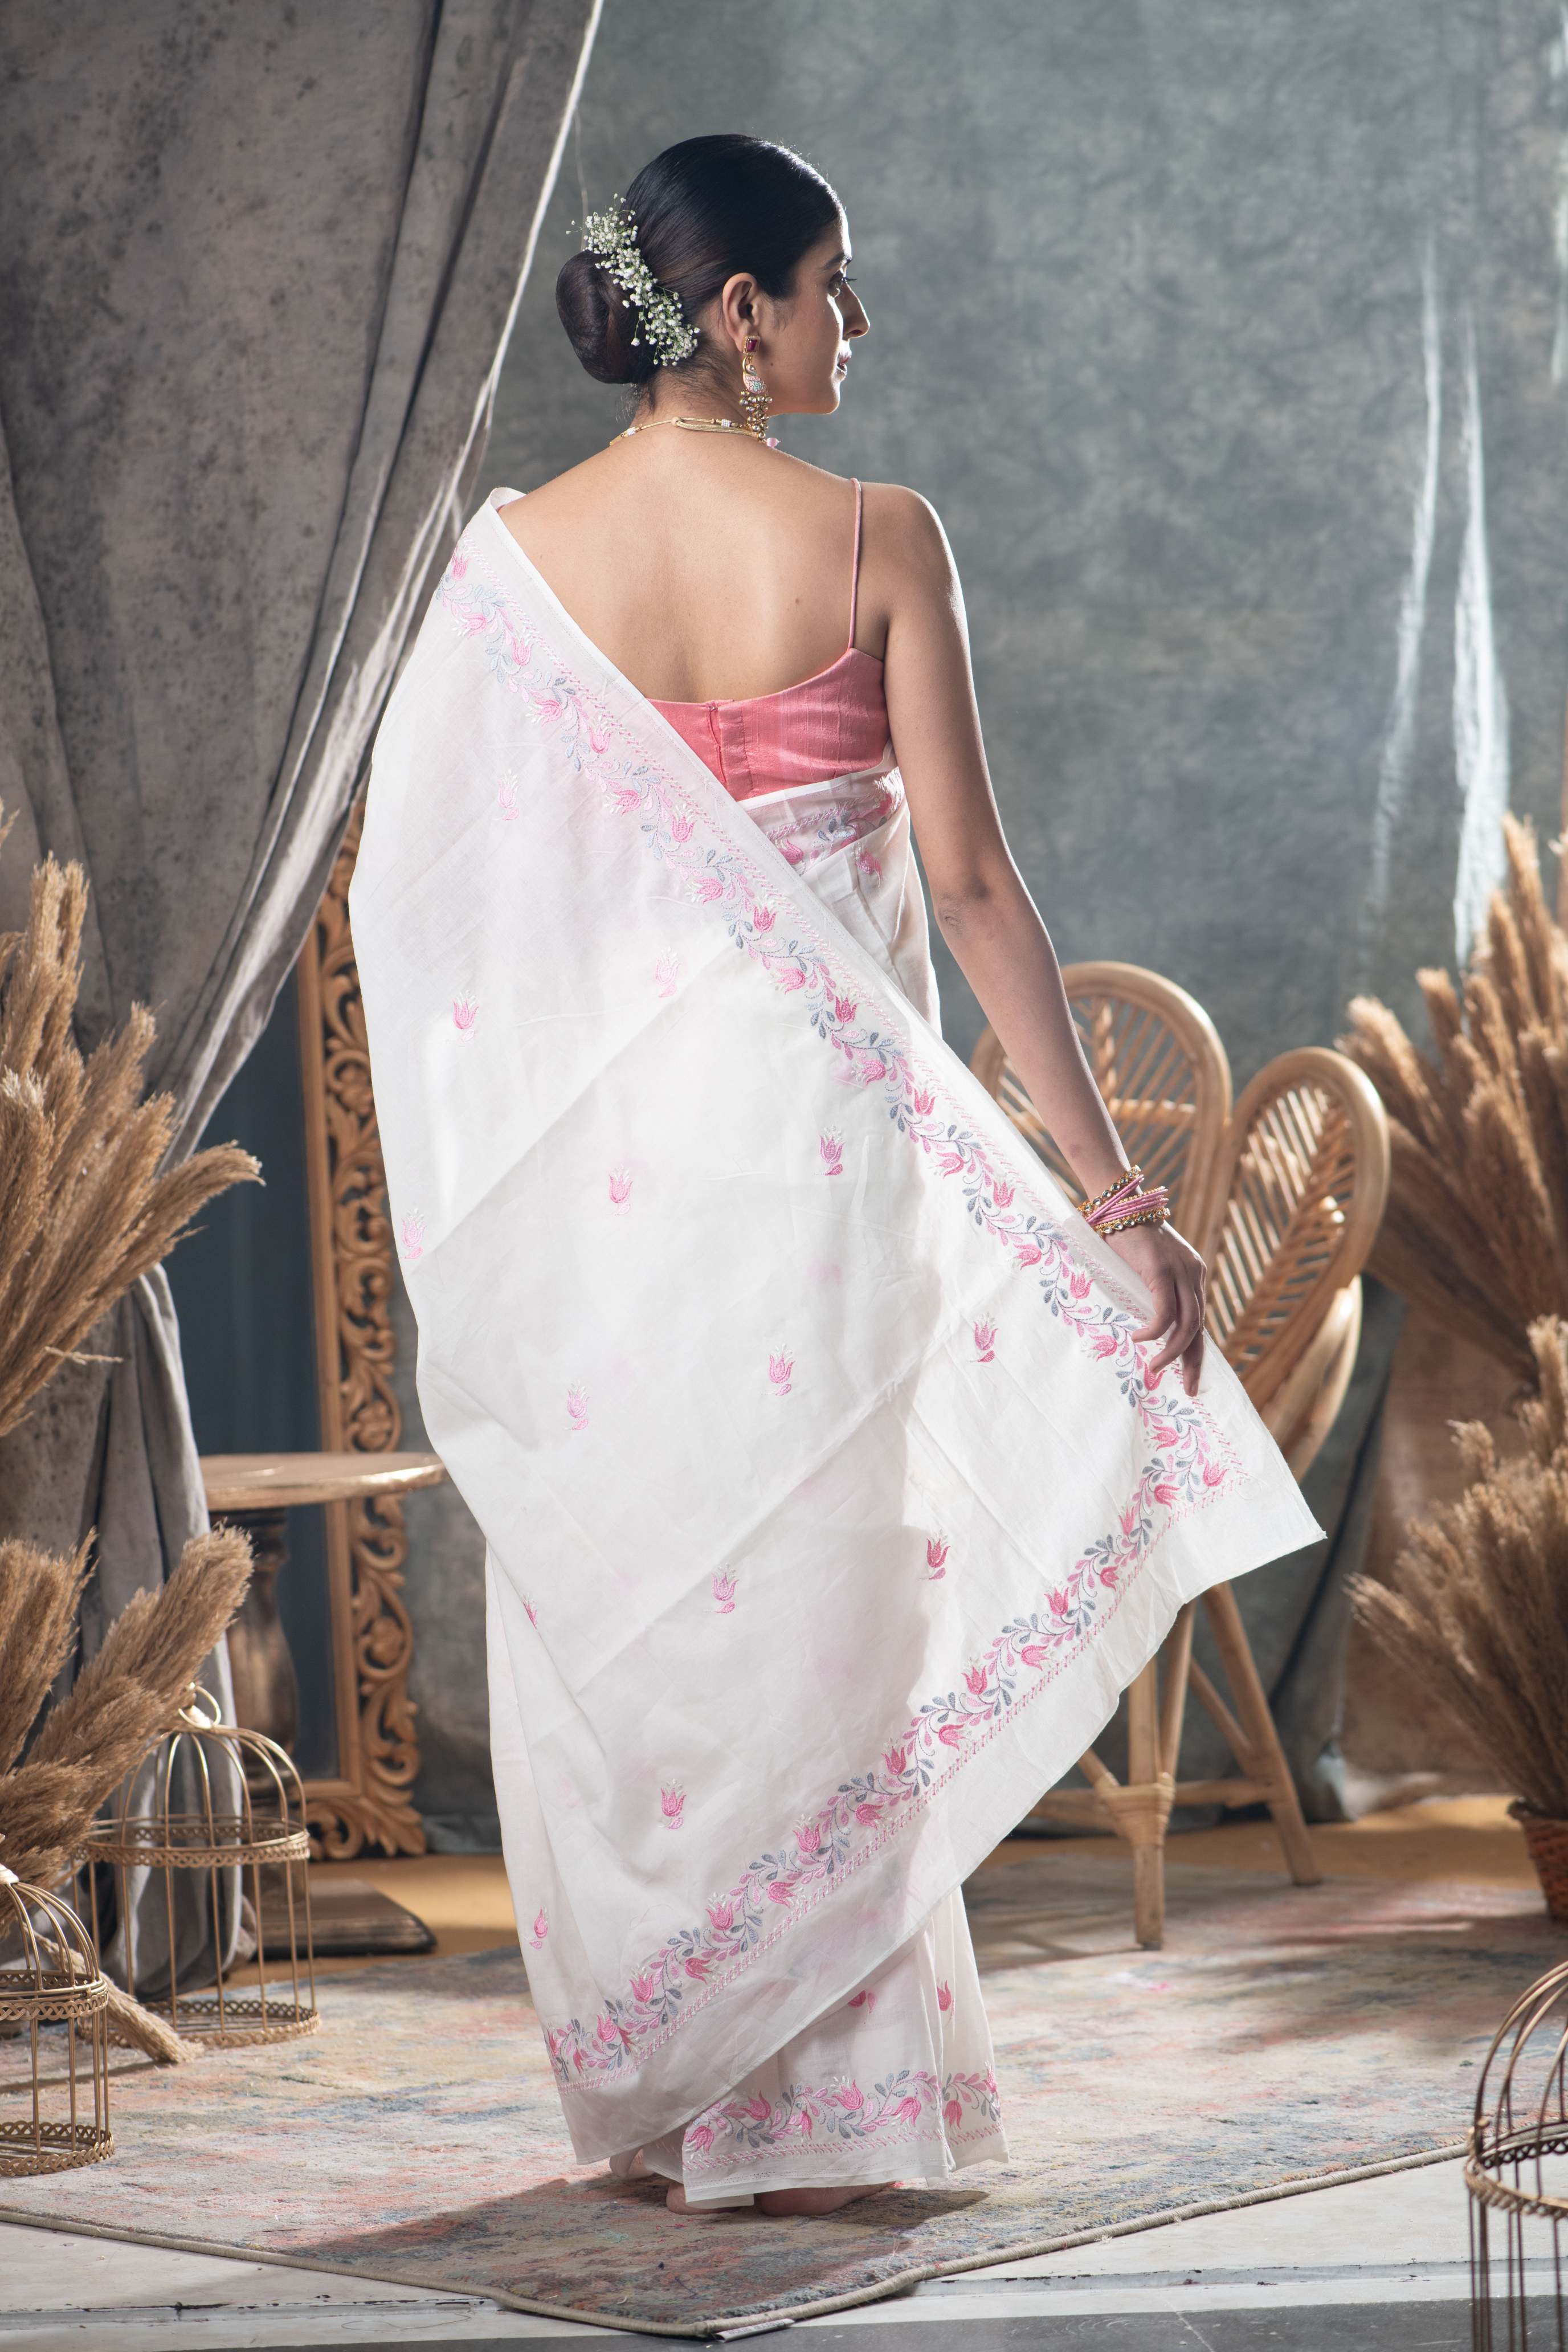 Women's Pearl White Cotton Saree - Karagiri